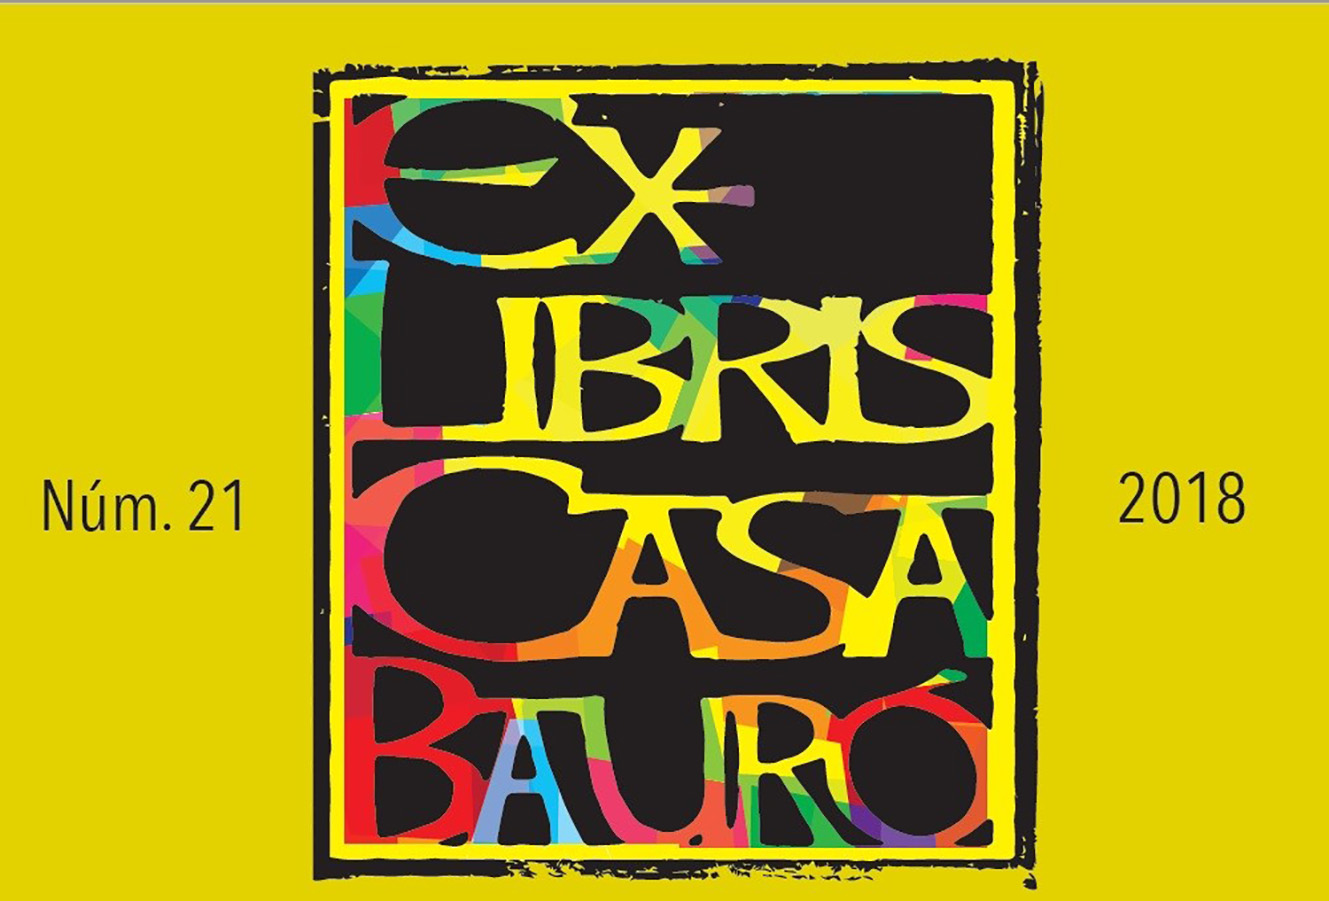 La publicació 'Ex-libris Casa Bauró' &